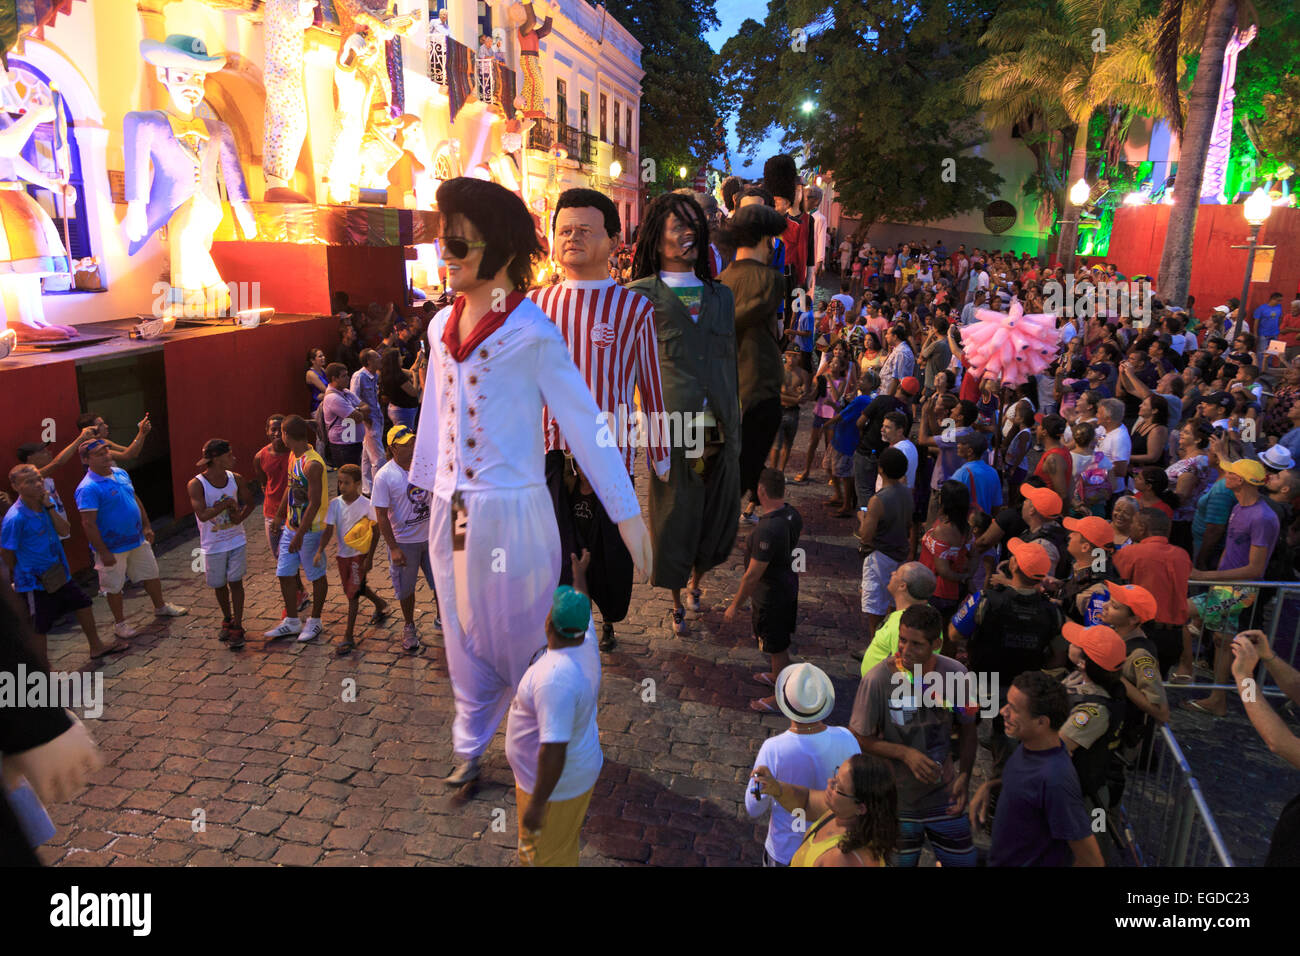 Brésil, Pernambuco Olinda, Vieille Ville (UNESCO Site), des marionnettes géantes durant Carnaval célébration Banque D'Images